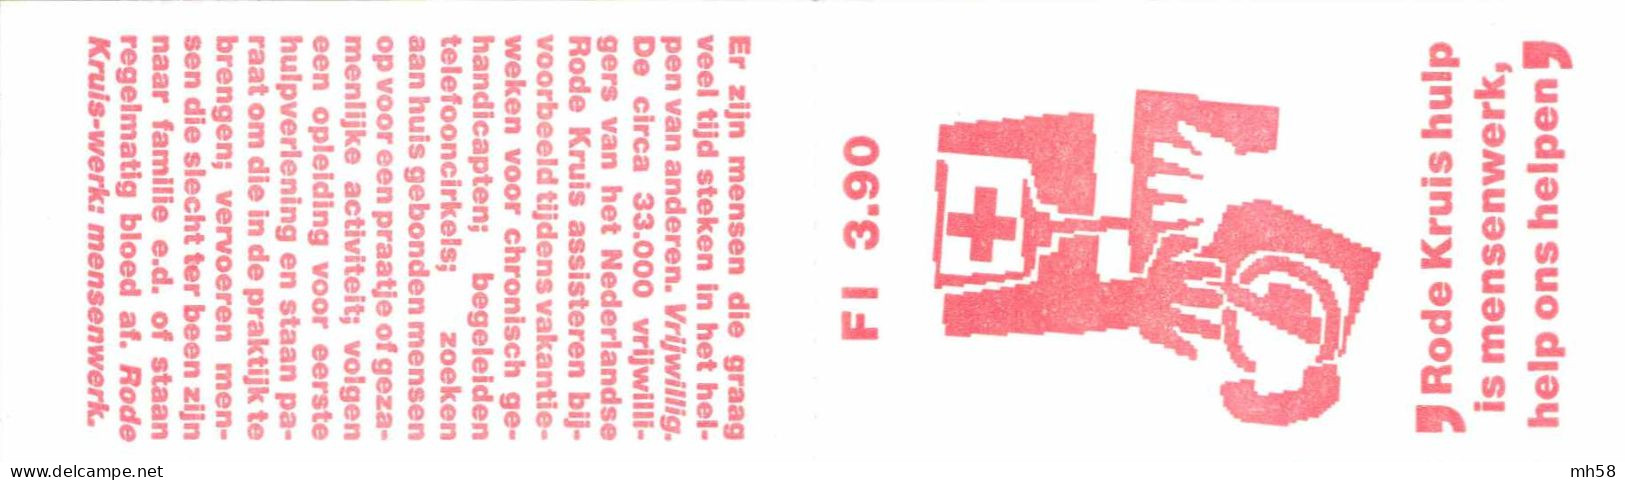 PAYS-BAS NEDERLAND 1987 Carnet / Booklet / MH Indice PB 36 - 3,90 G Croix-Rouge Dessins Stylisés - YT C 1293a / MI MH 37 - Libretti